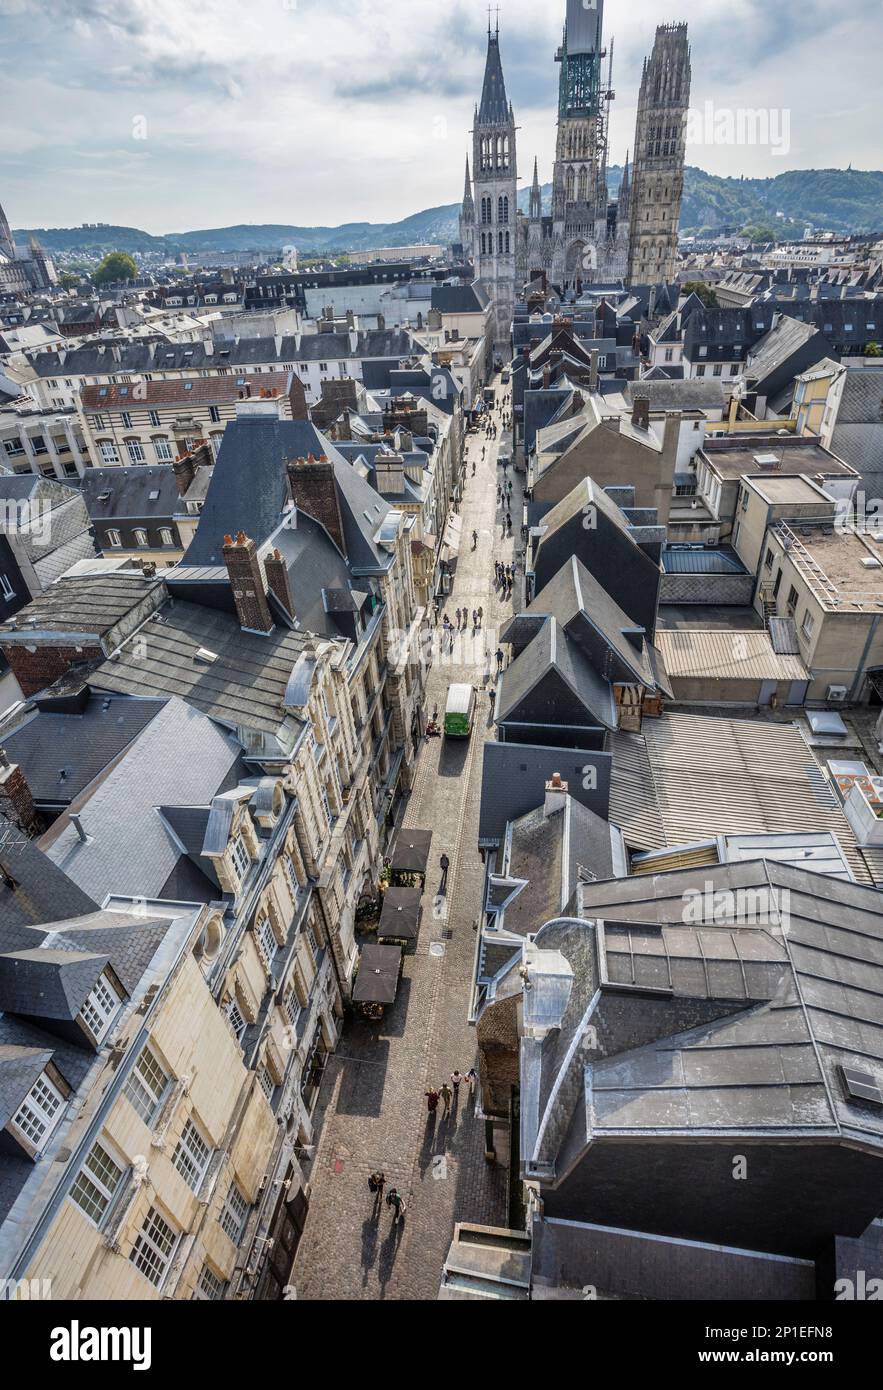 Vue sur les toits de Rouen depuis le beffroi du gros-horloge, l'horloge à gratin, donnant sur la rue du gros-horloge en direction de la cathédrale de Rouen, en Normandie Banque D'Images